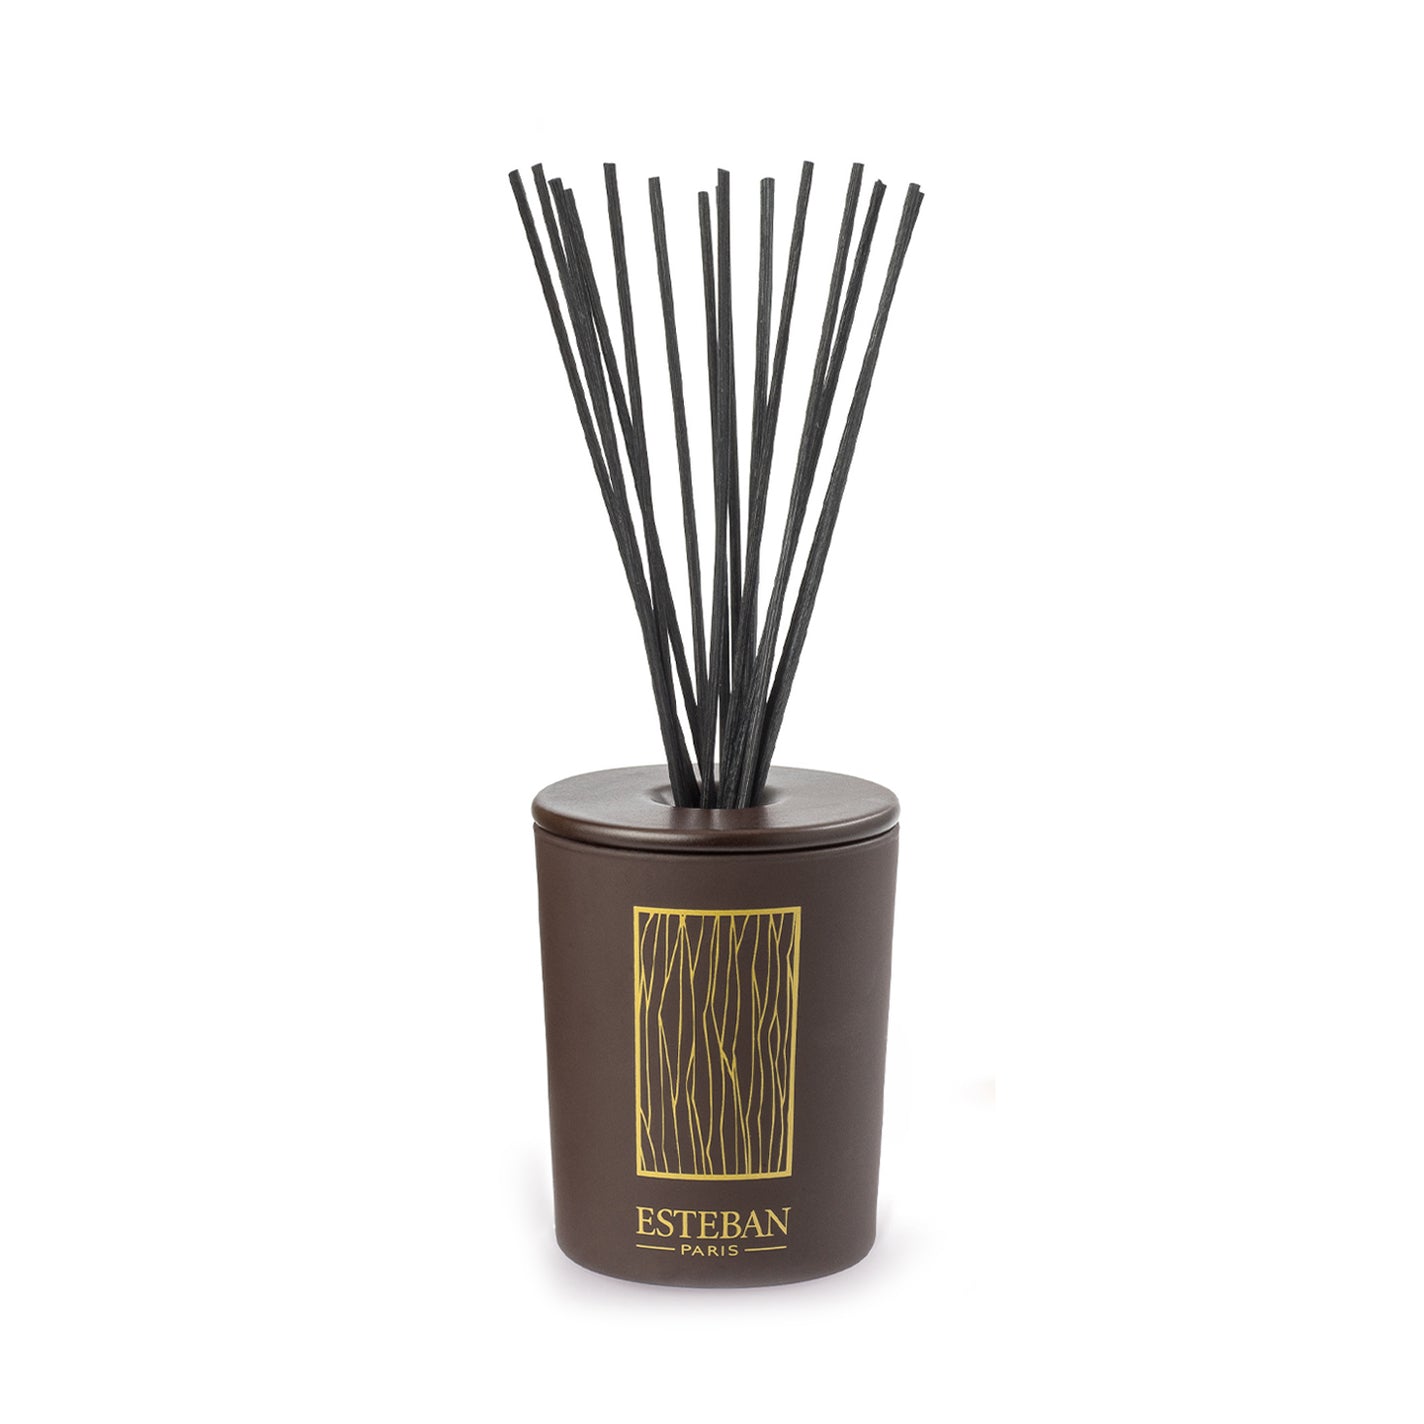 ESTEBAN - CEDRE AU NATURAL - Bamboo Stick Incense